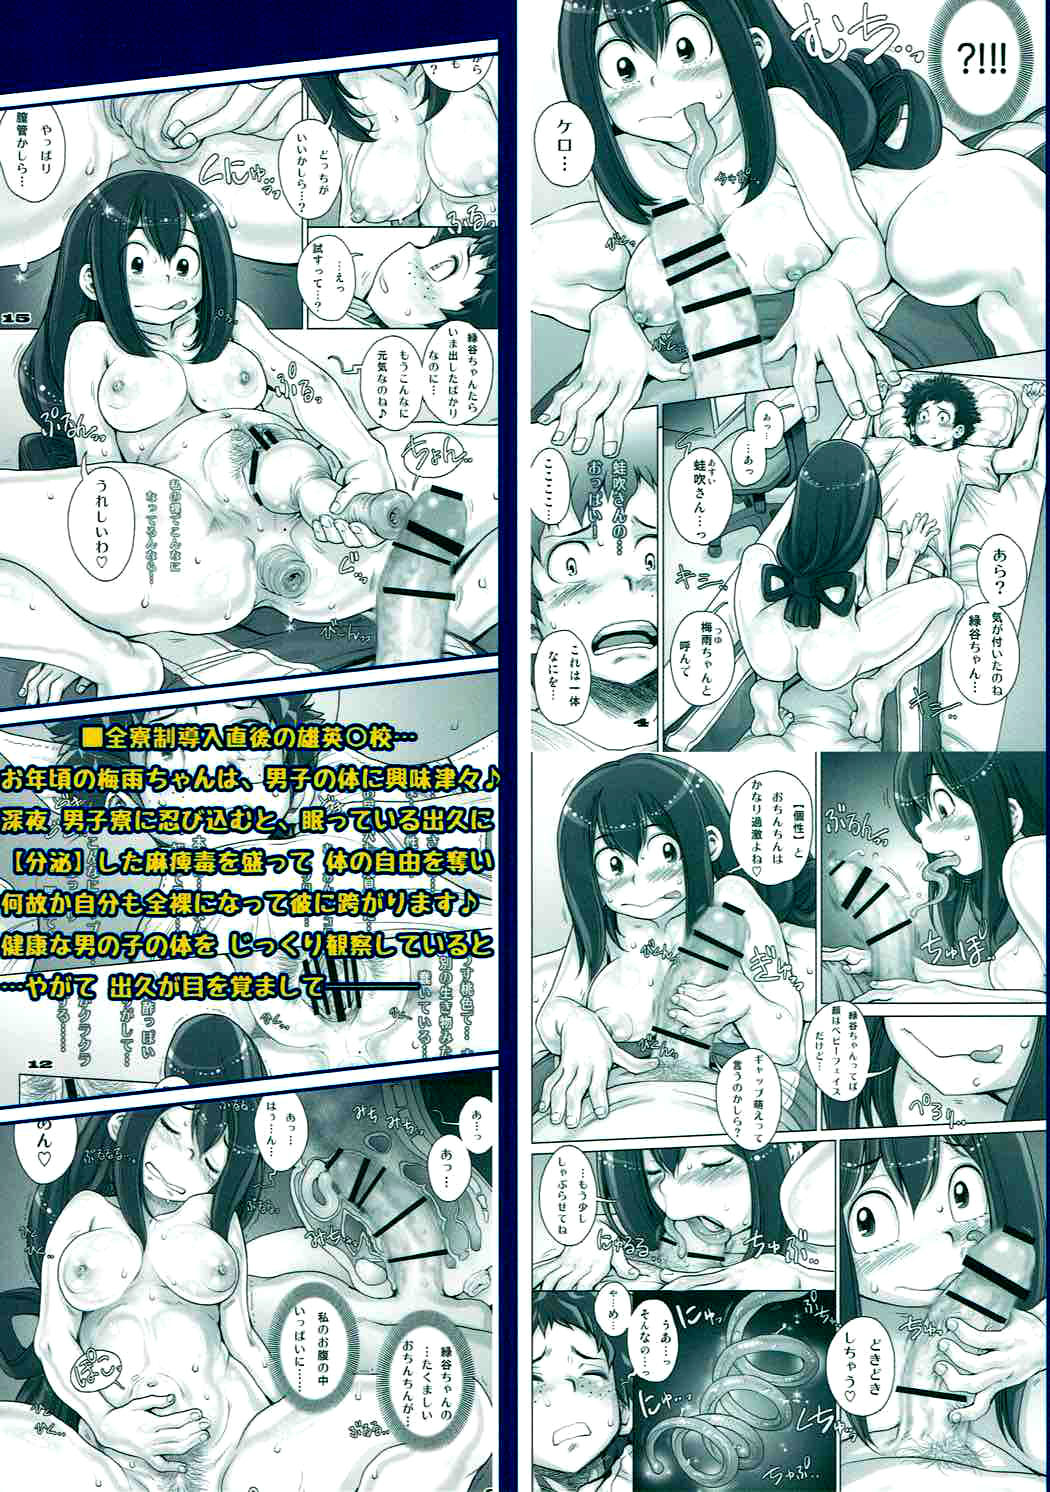 De boku no hero manga hentai com safada com uma pica a comendo